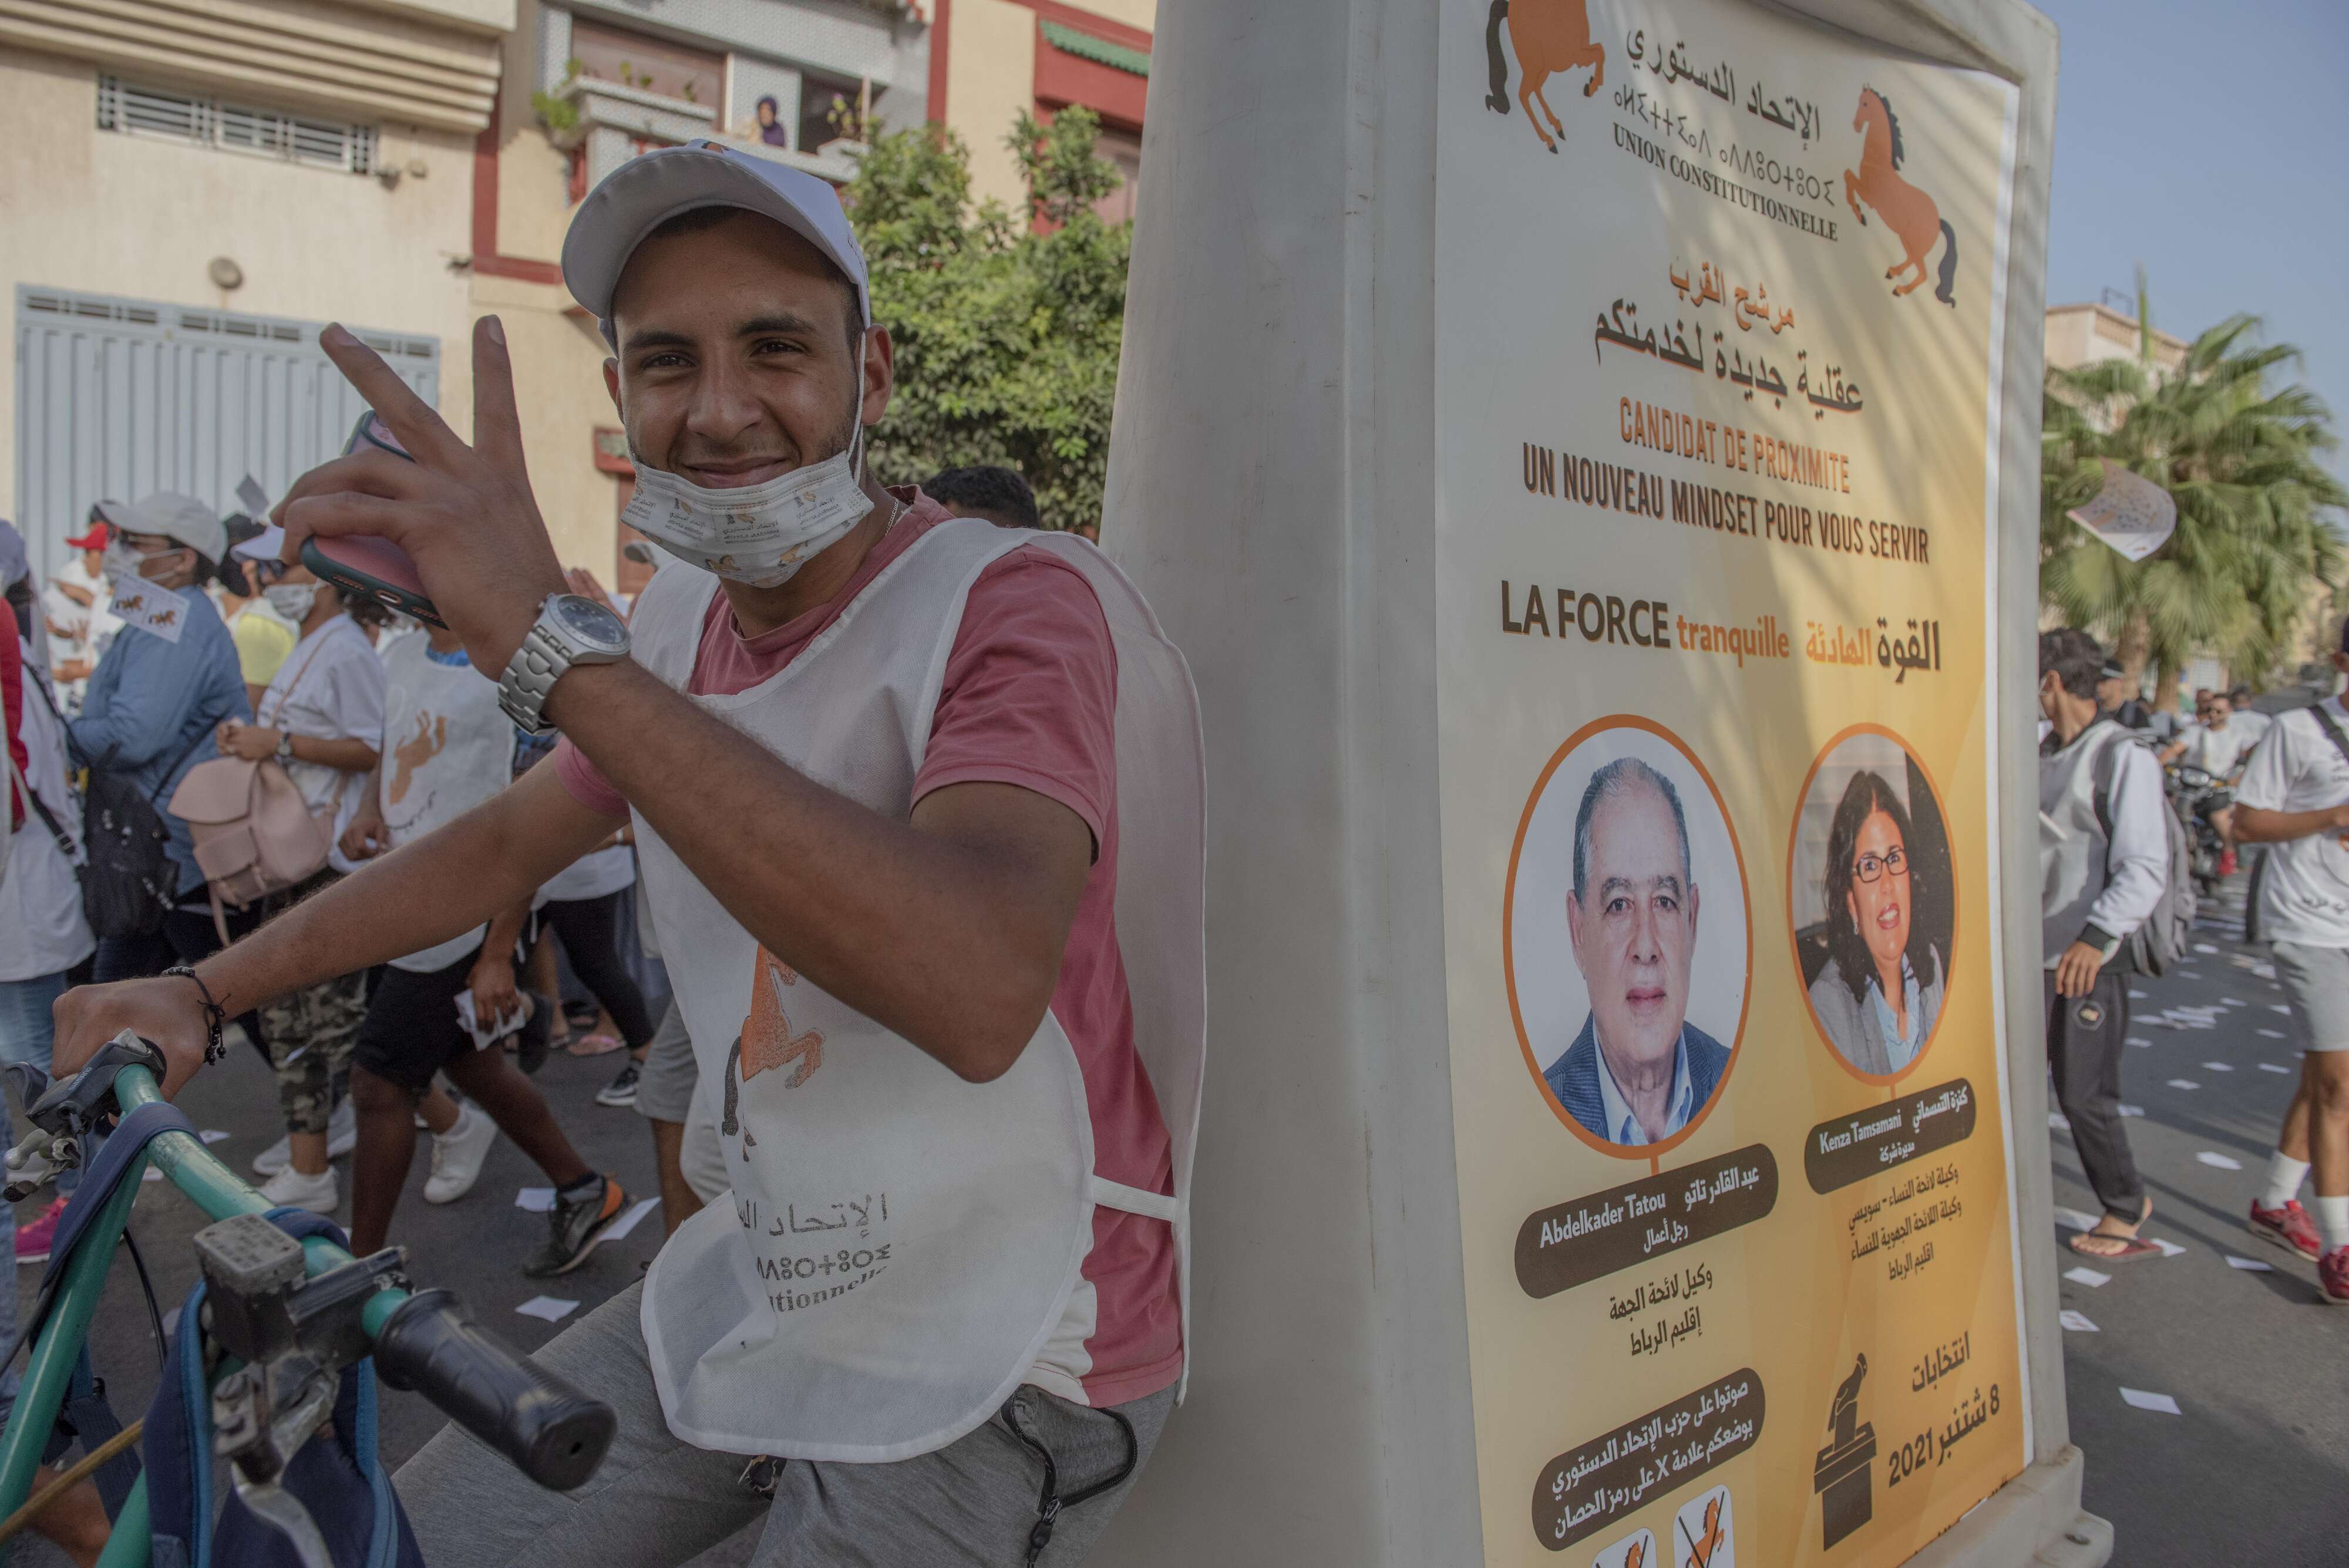 المغرب شهد حملة انتخابية باردة بسبب كورونا لكنها تصاعدت في الاونة الاخيرة مع اقتراب موعد الاقتراع